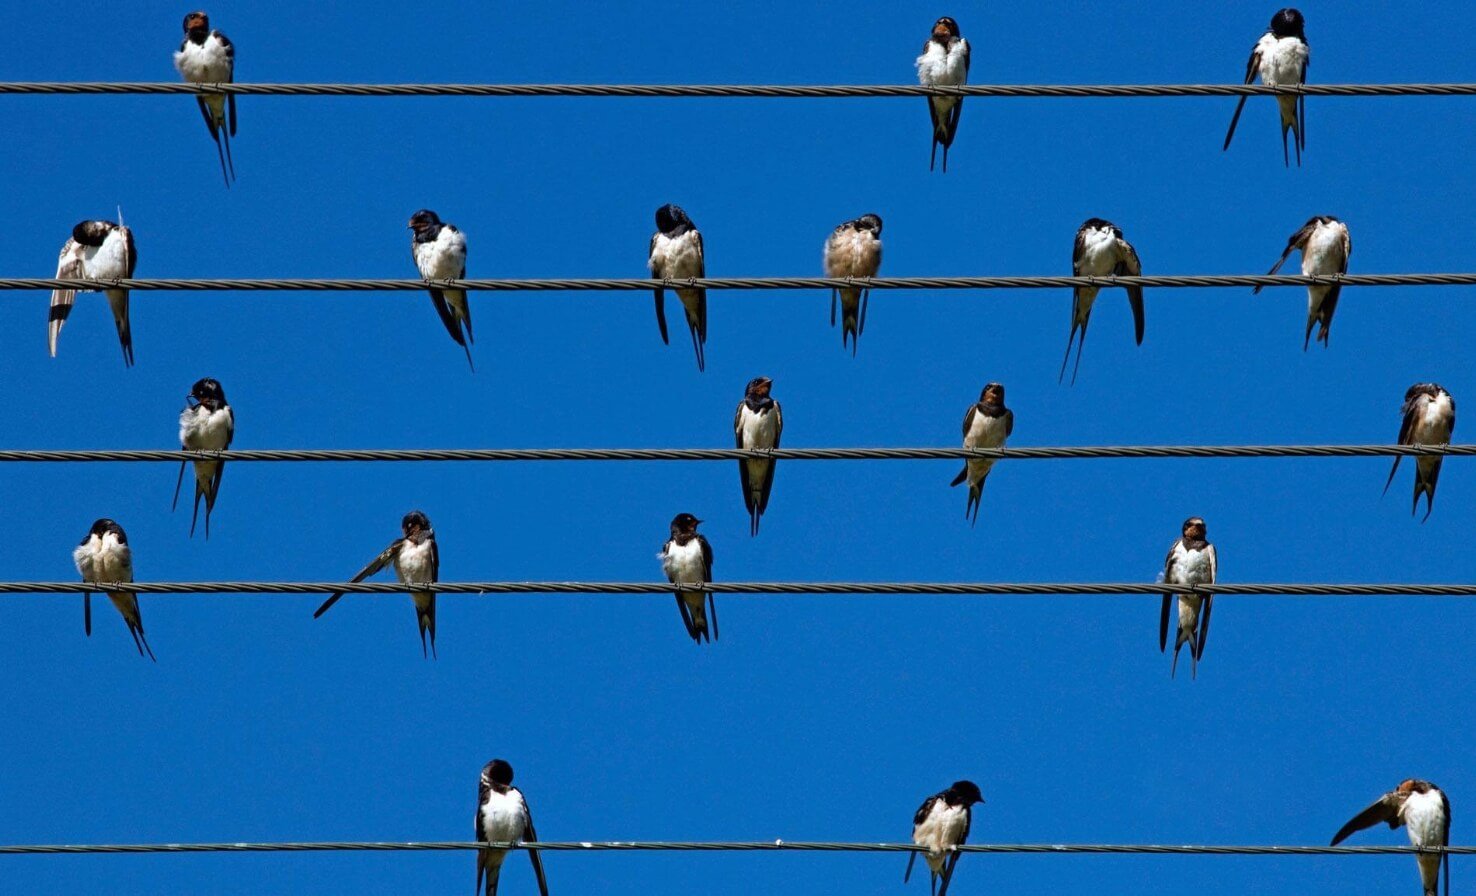 Почему птиц на высоковольтных проводах не ударяет током. Птицы сидят на проводах и их не бьет током — этому есть научное объяснение. Источник: nkj.ru. Фото.